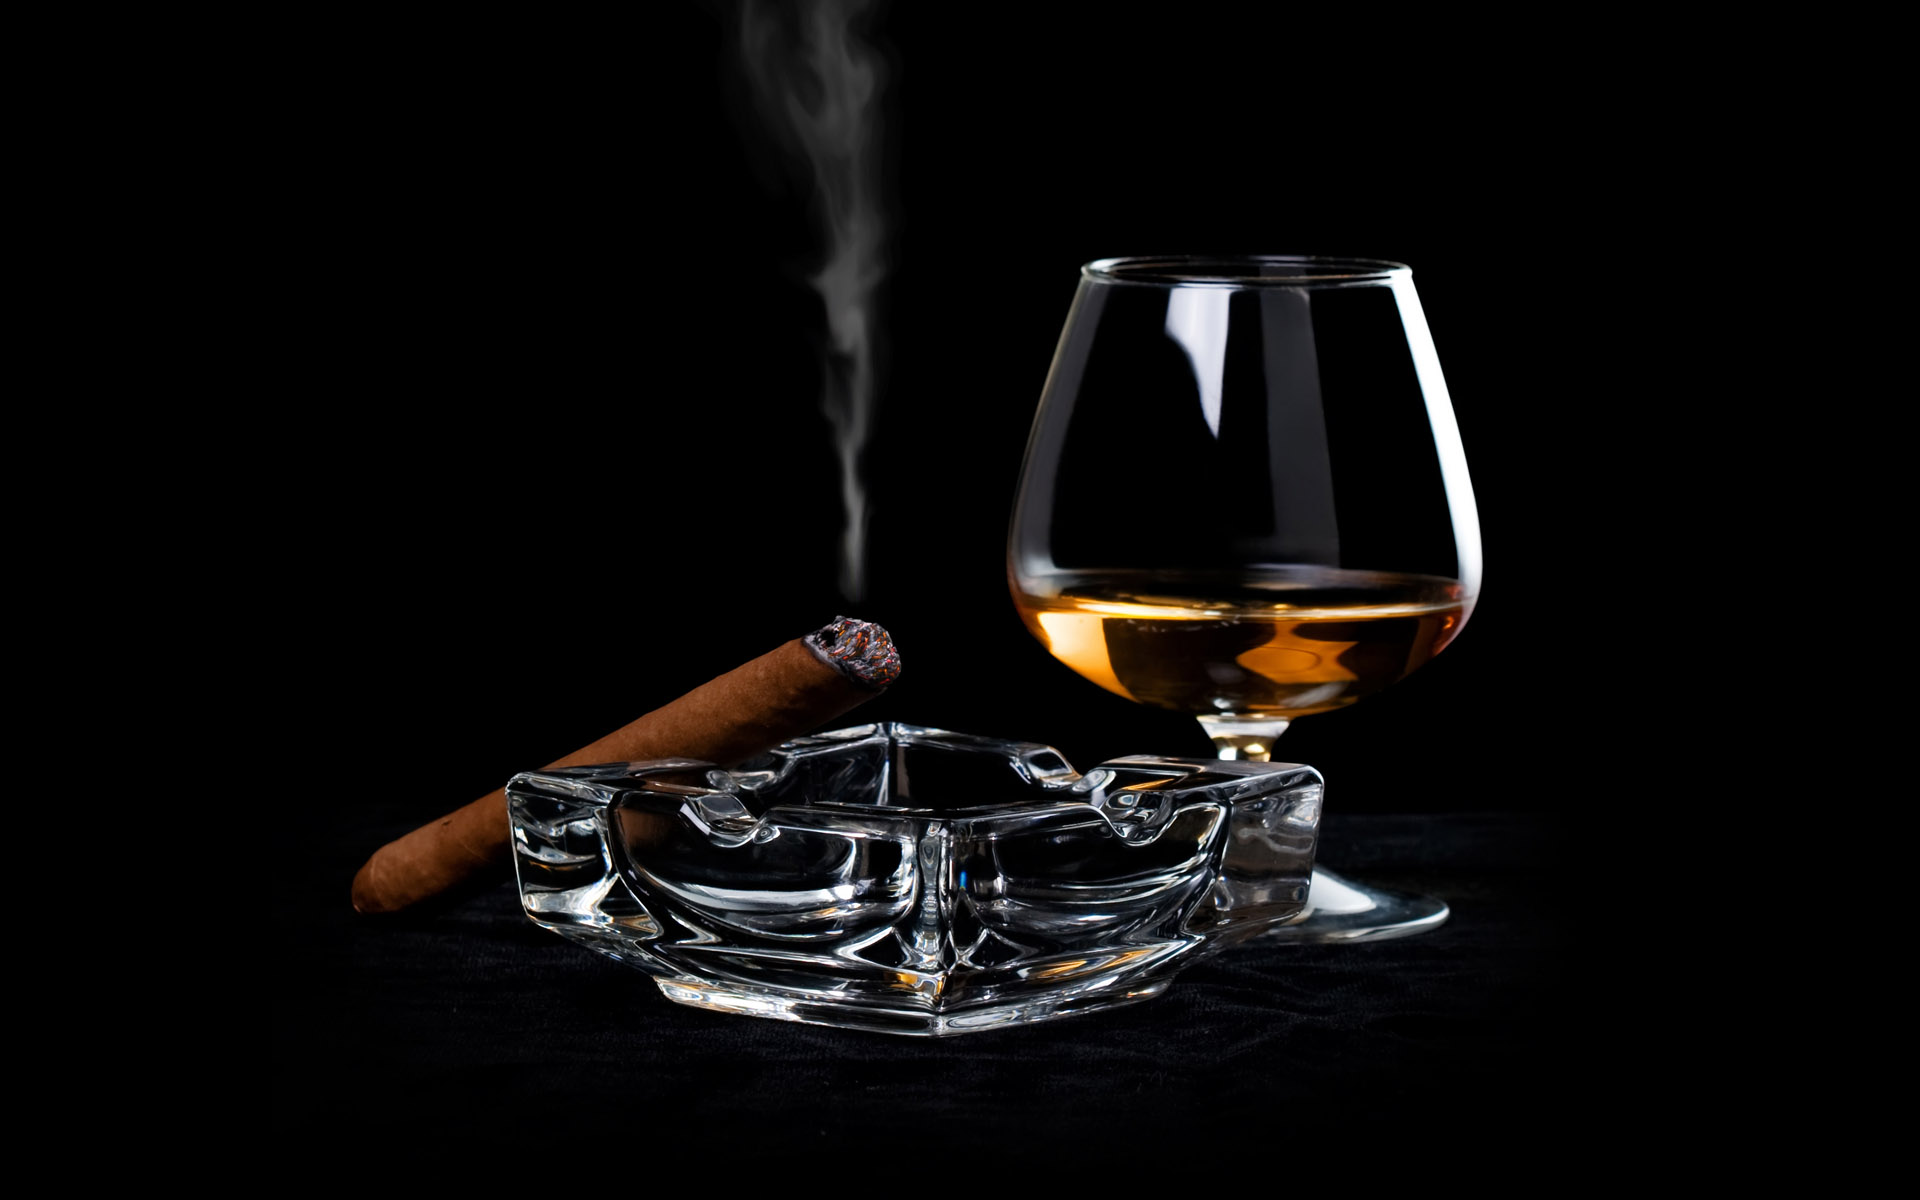 Photographie Whiskey und Zigarre